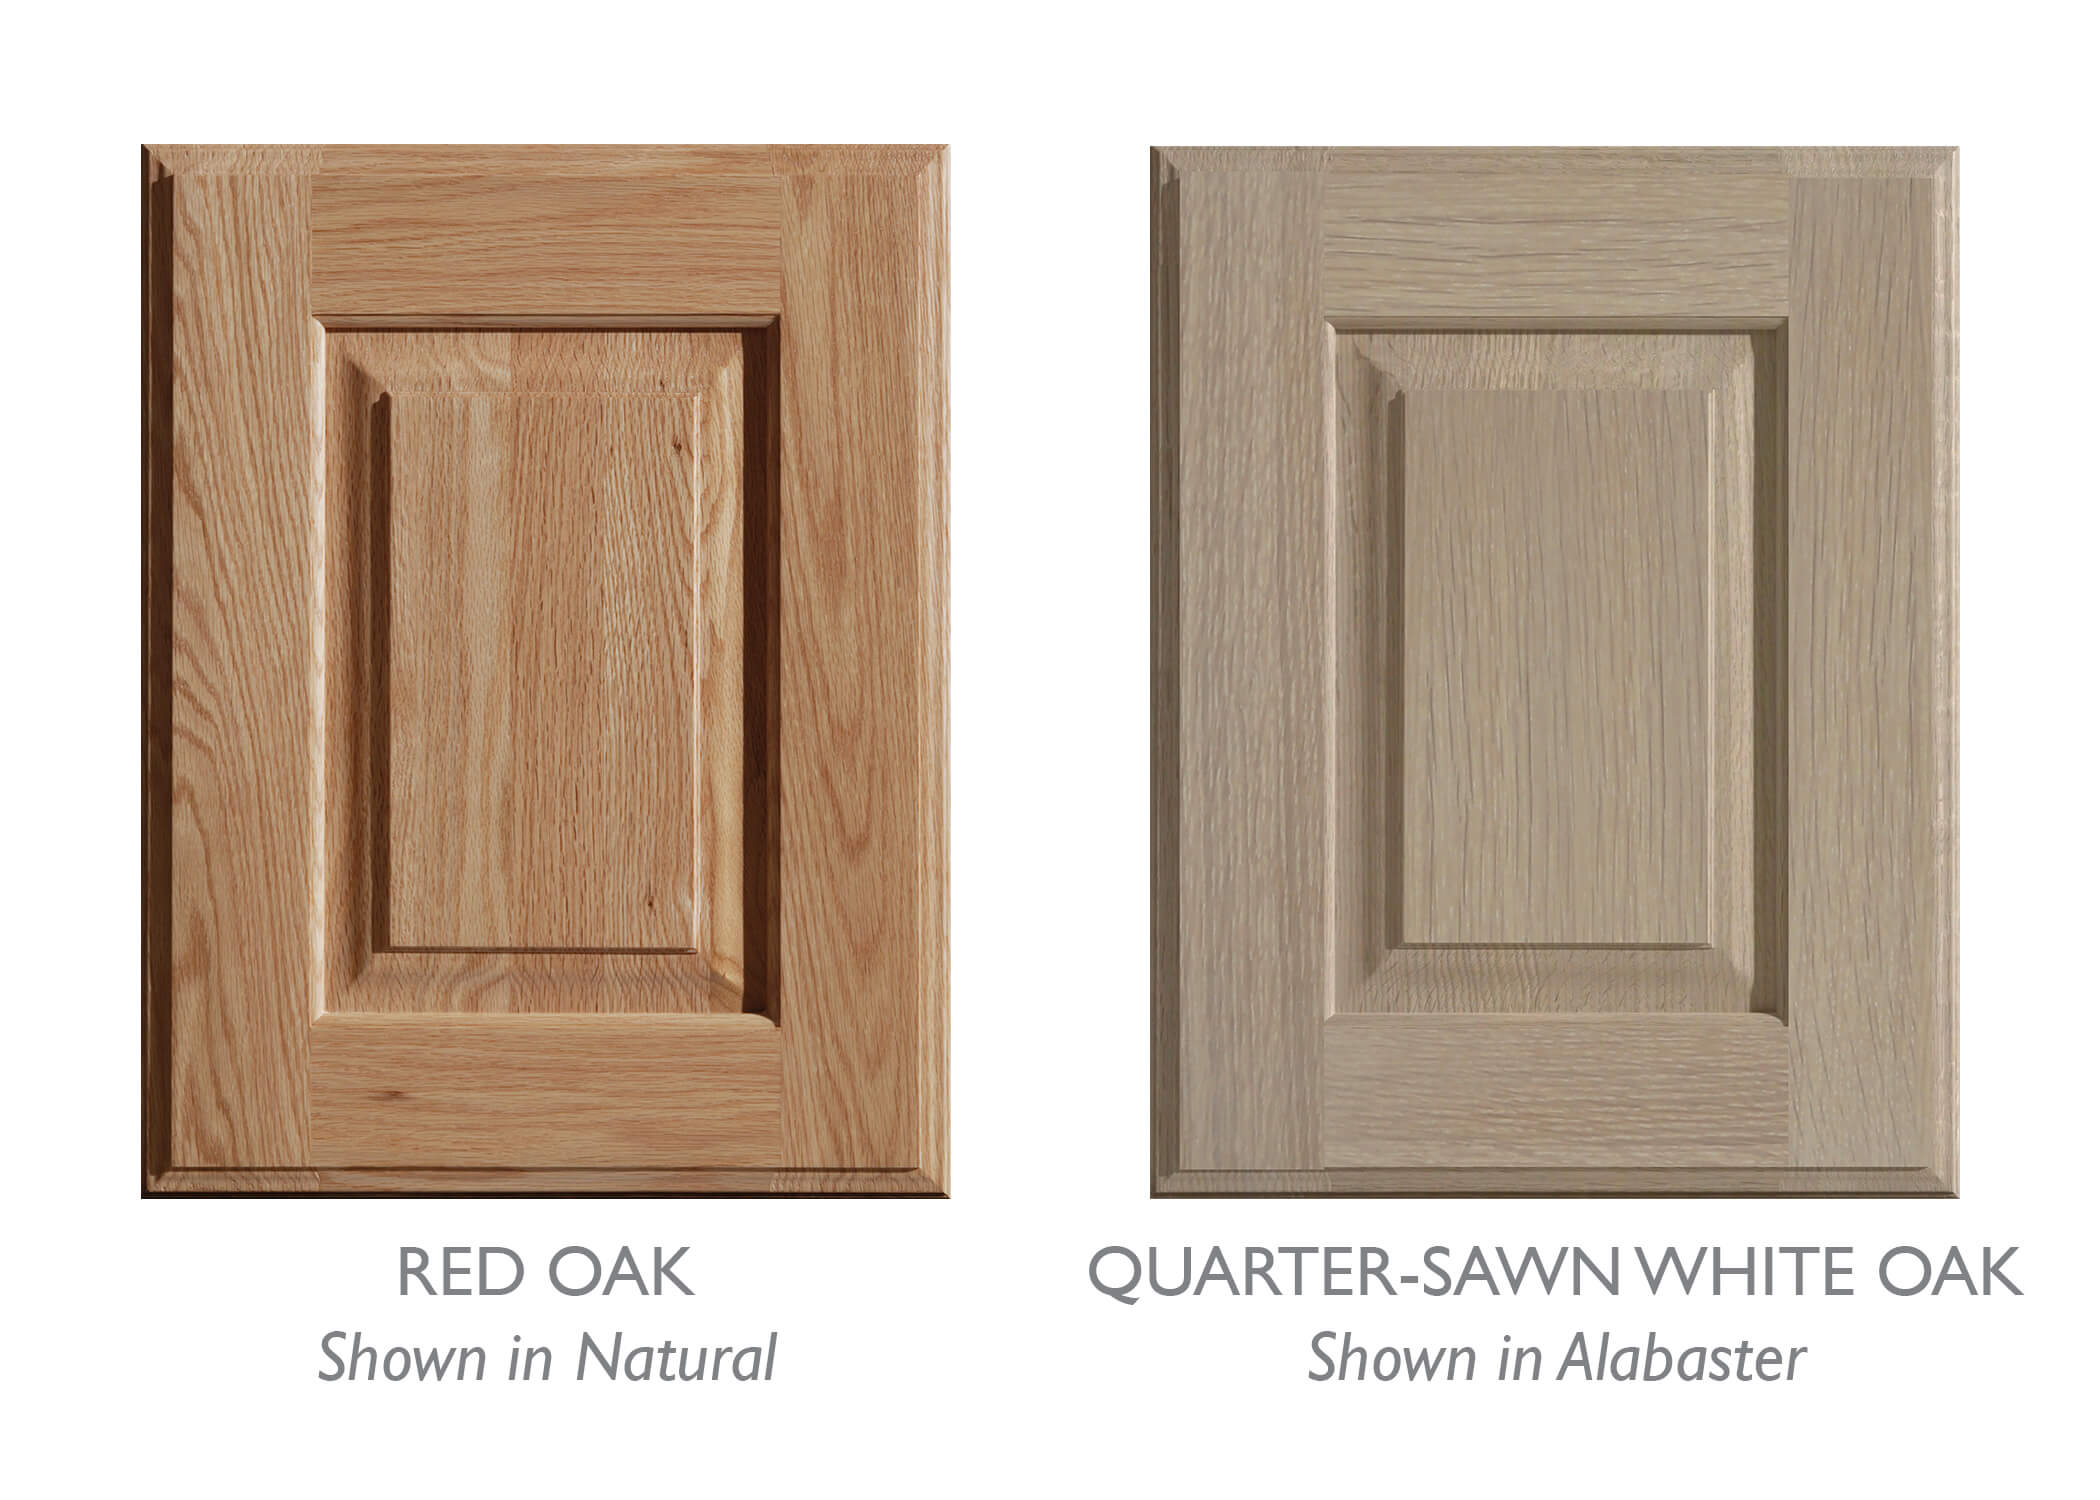 Quarter-Sawn Oak verses Plain-Sawn Oak shown in two cabinet doors.